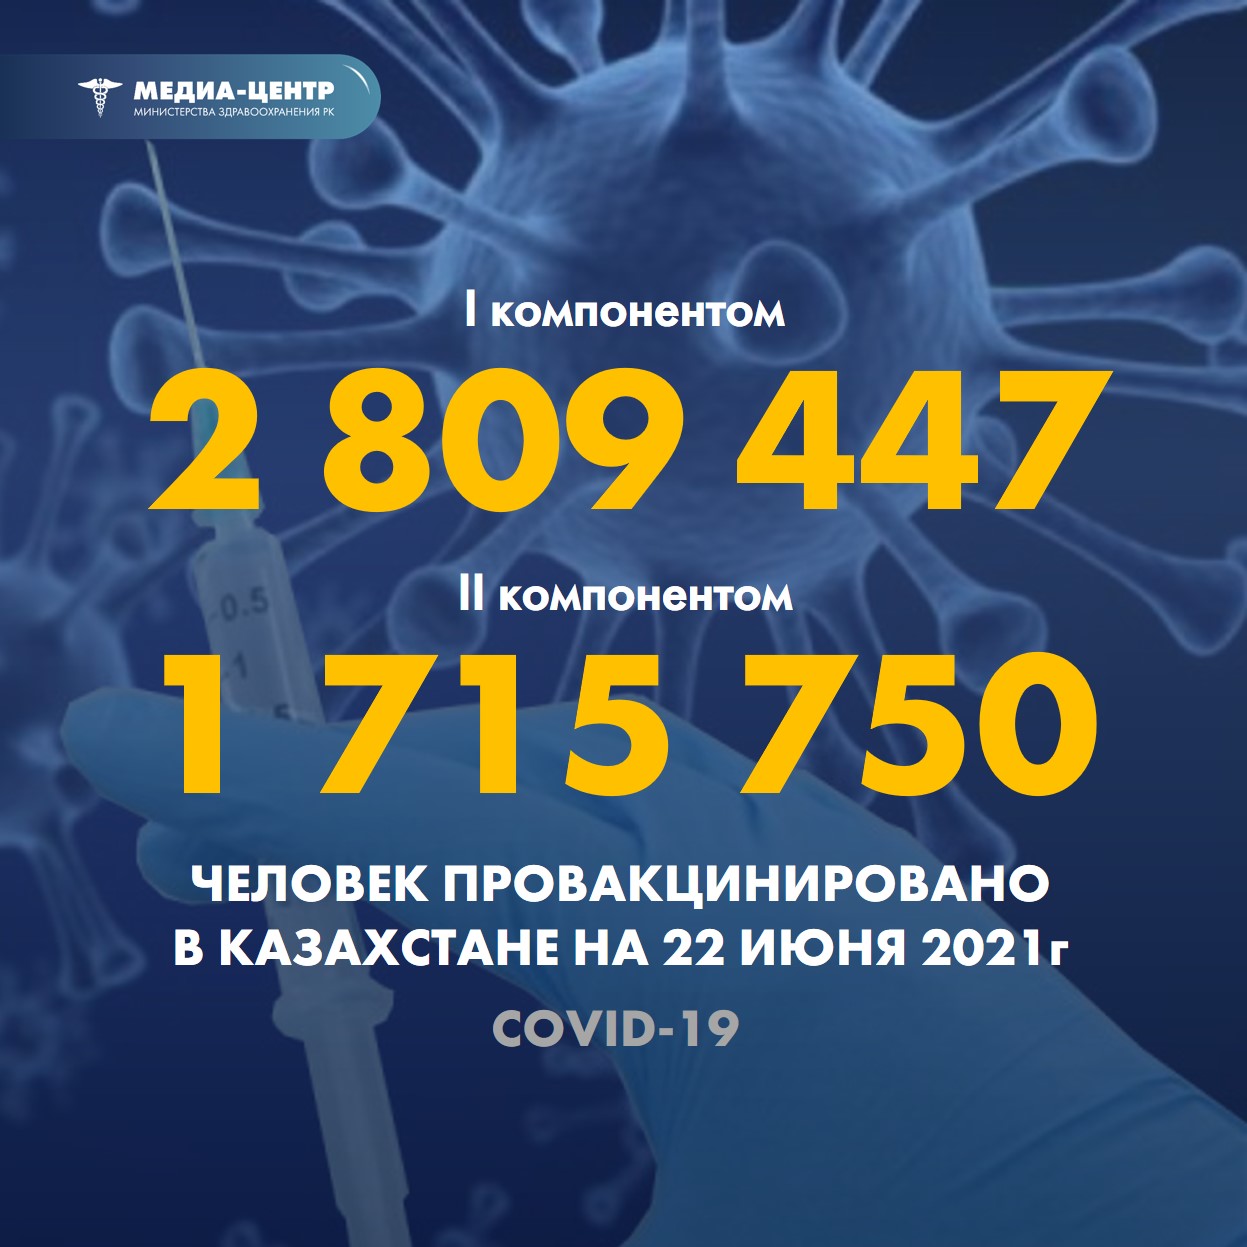 Информация о проведении вакцинации населения против КВИ на 22.06.2021 г. в разрезе регионов